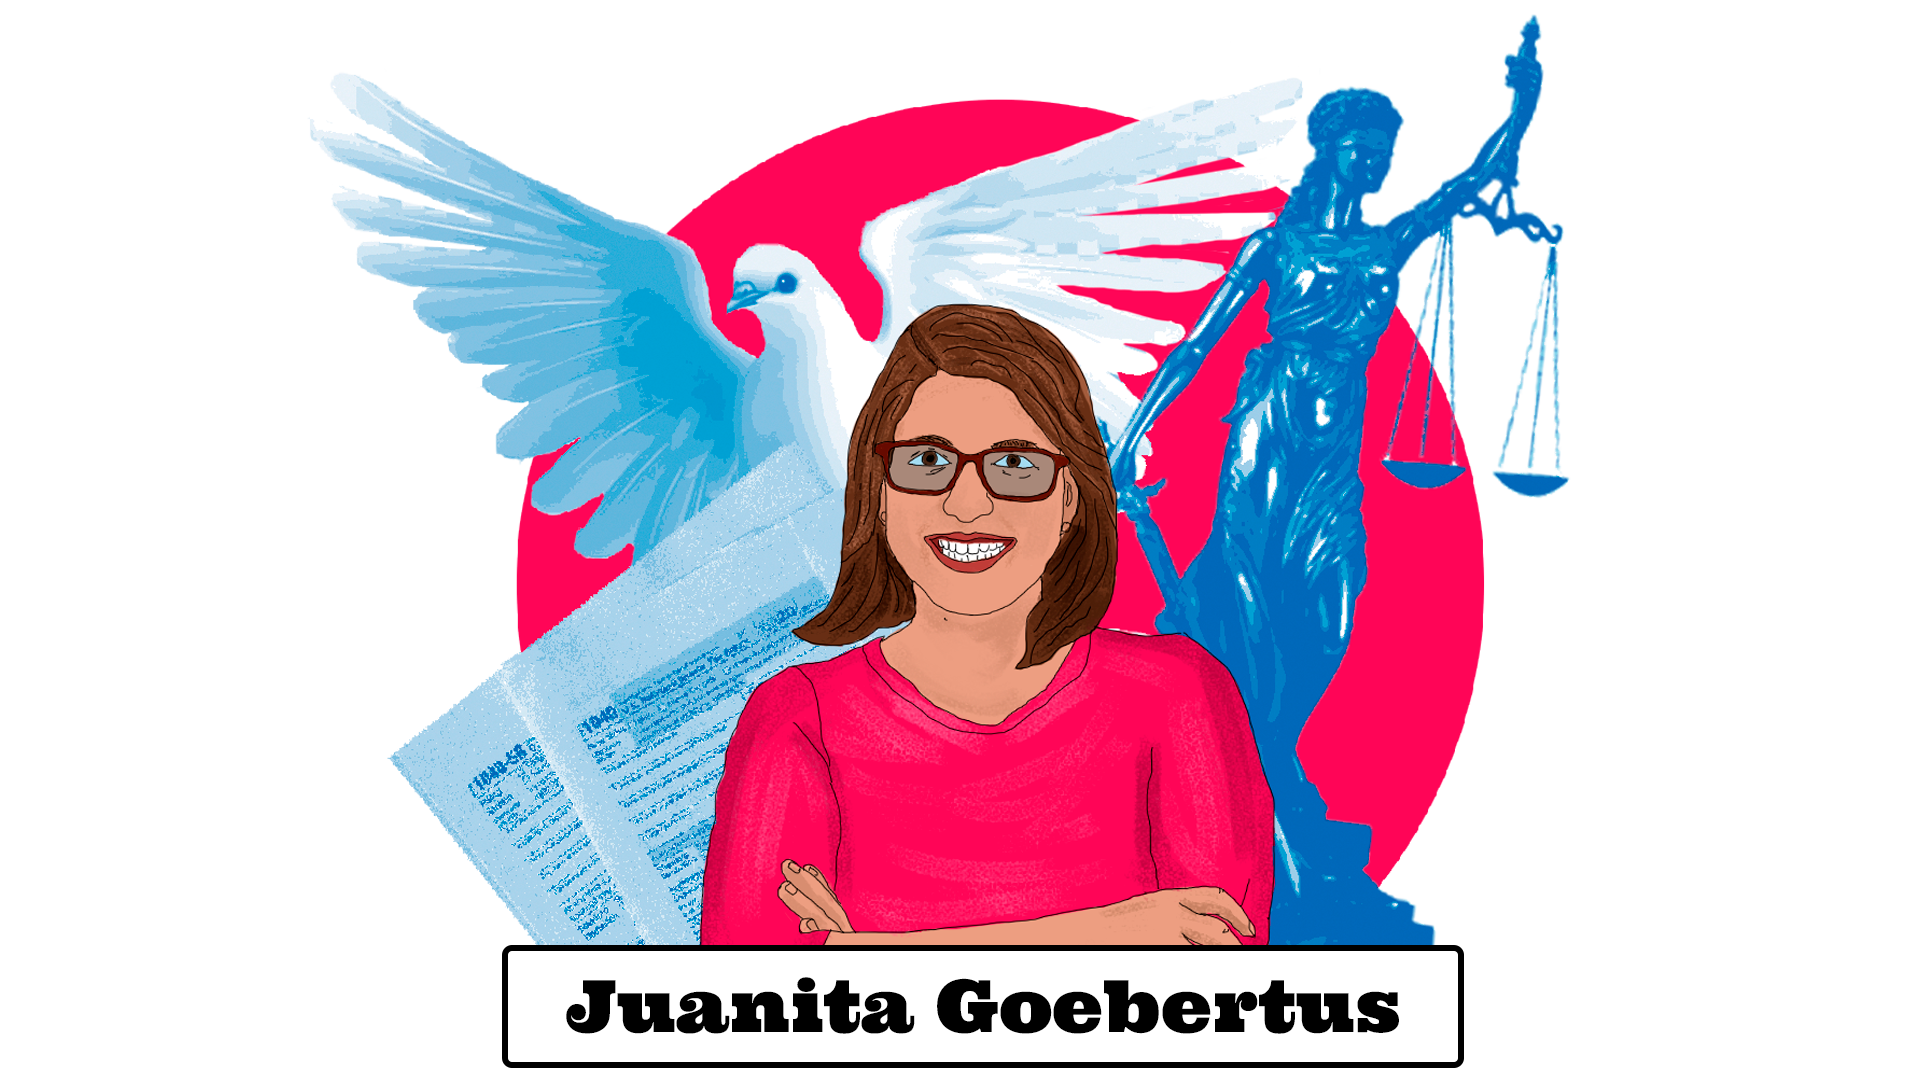 Juanita Goebertus